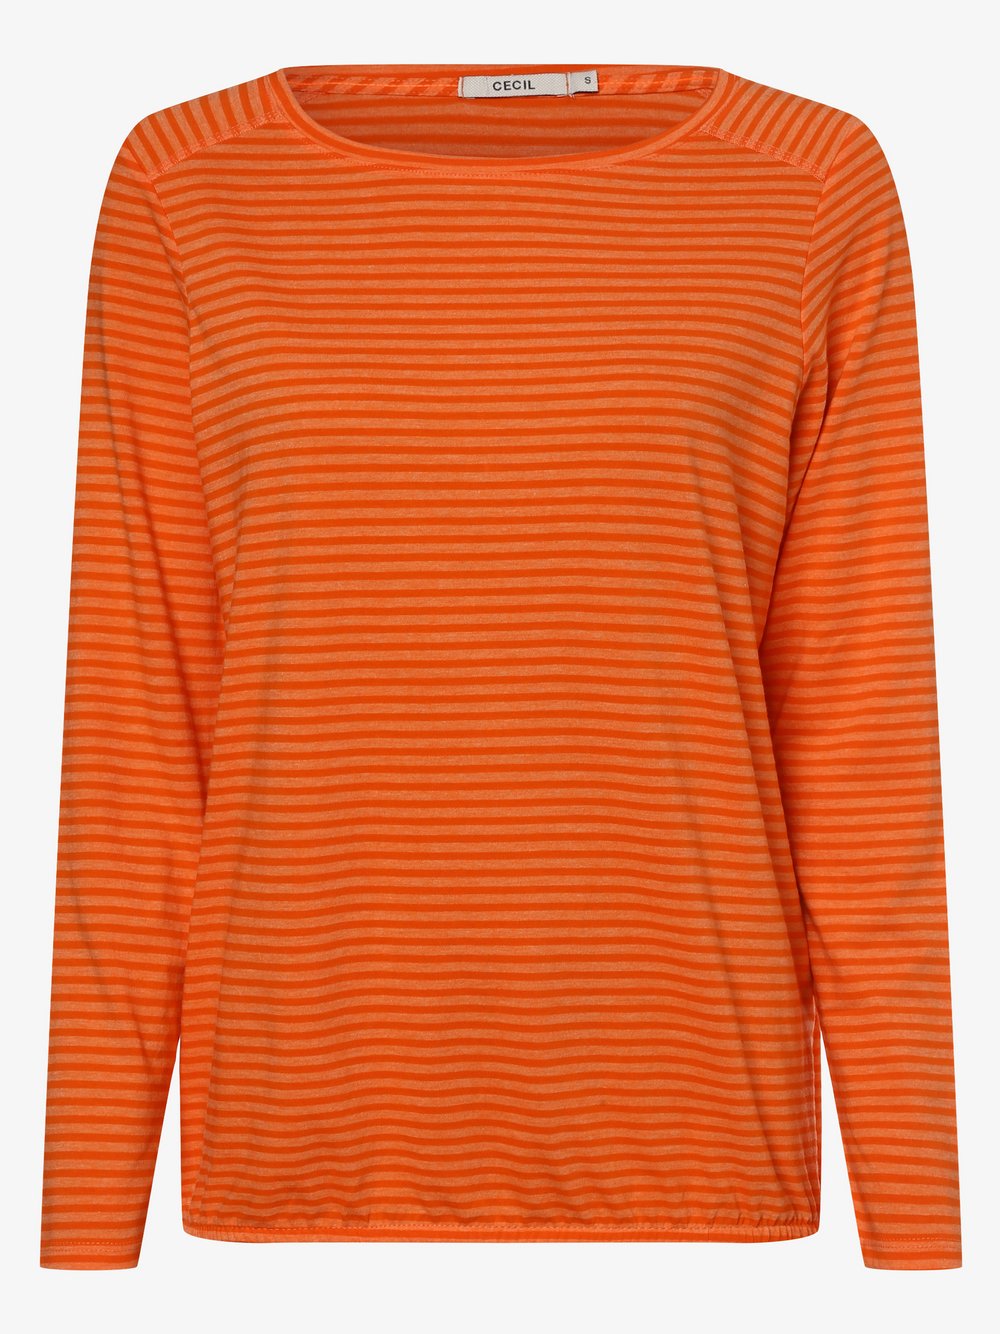 CECIL - Damska koszulka z długim rękawem, pomarańczowy